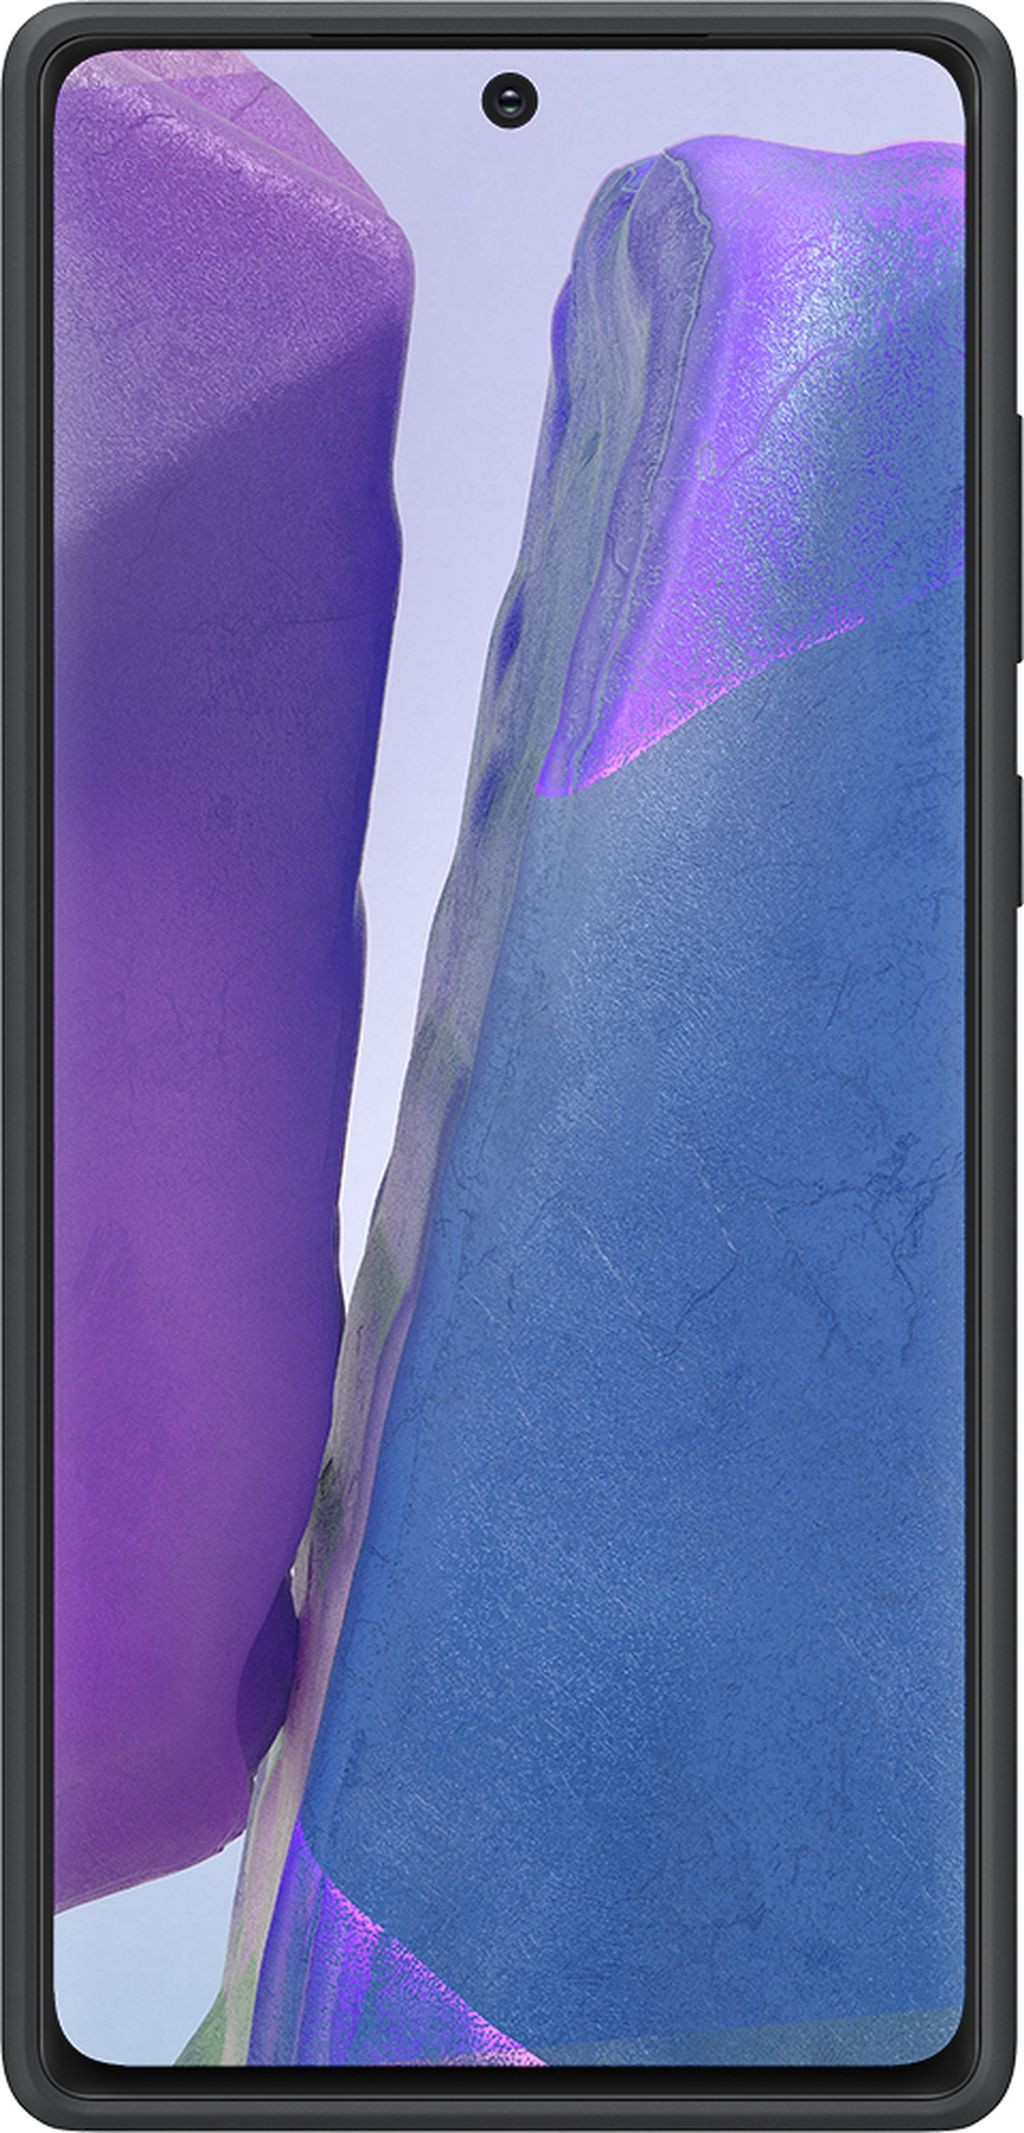 SAMSUNG Coque smartphone  - EF-PN980TB